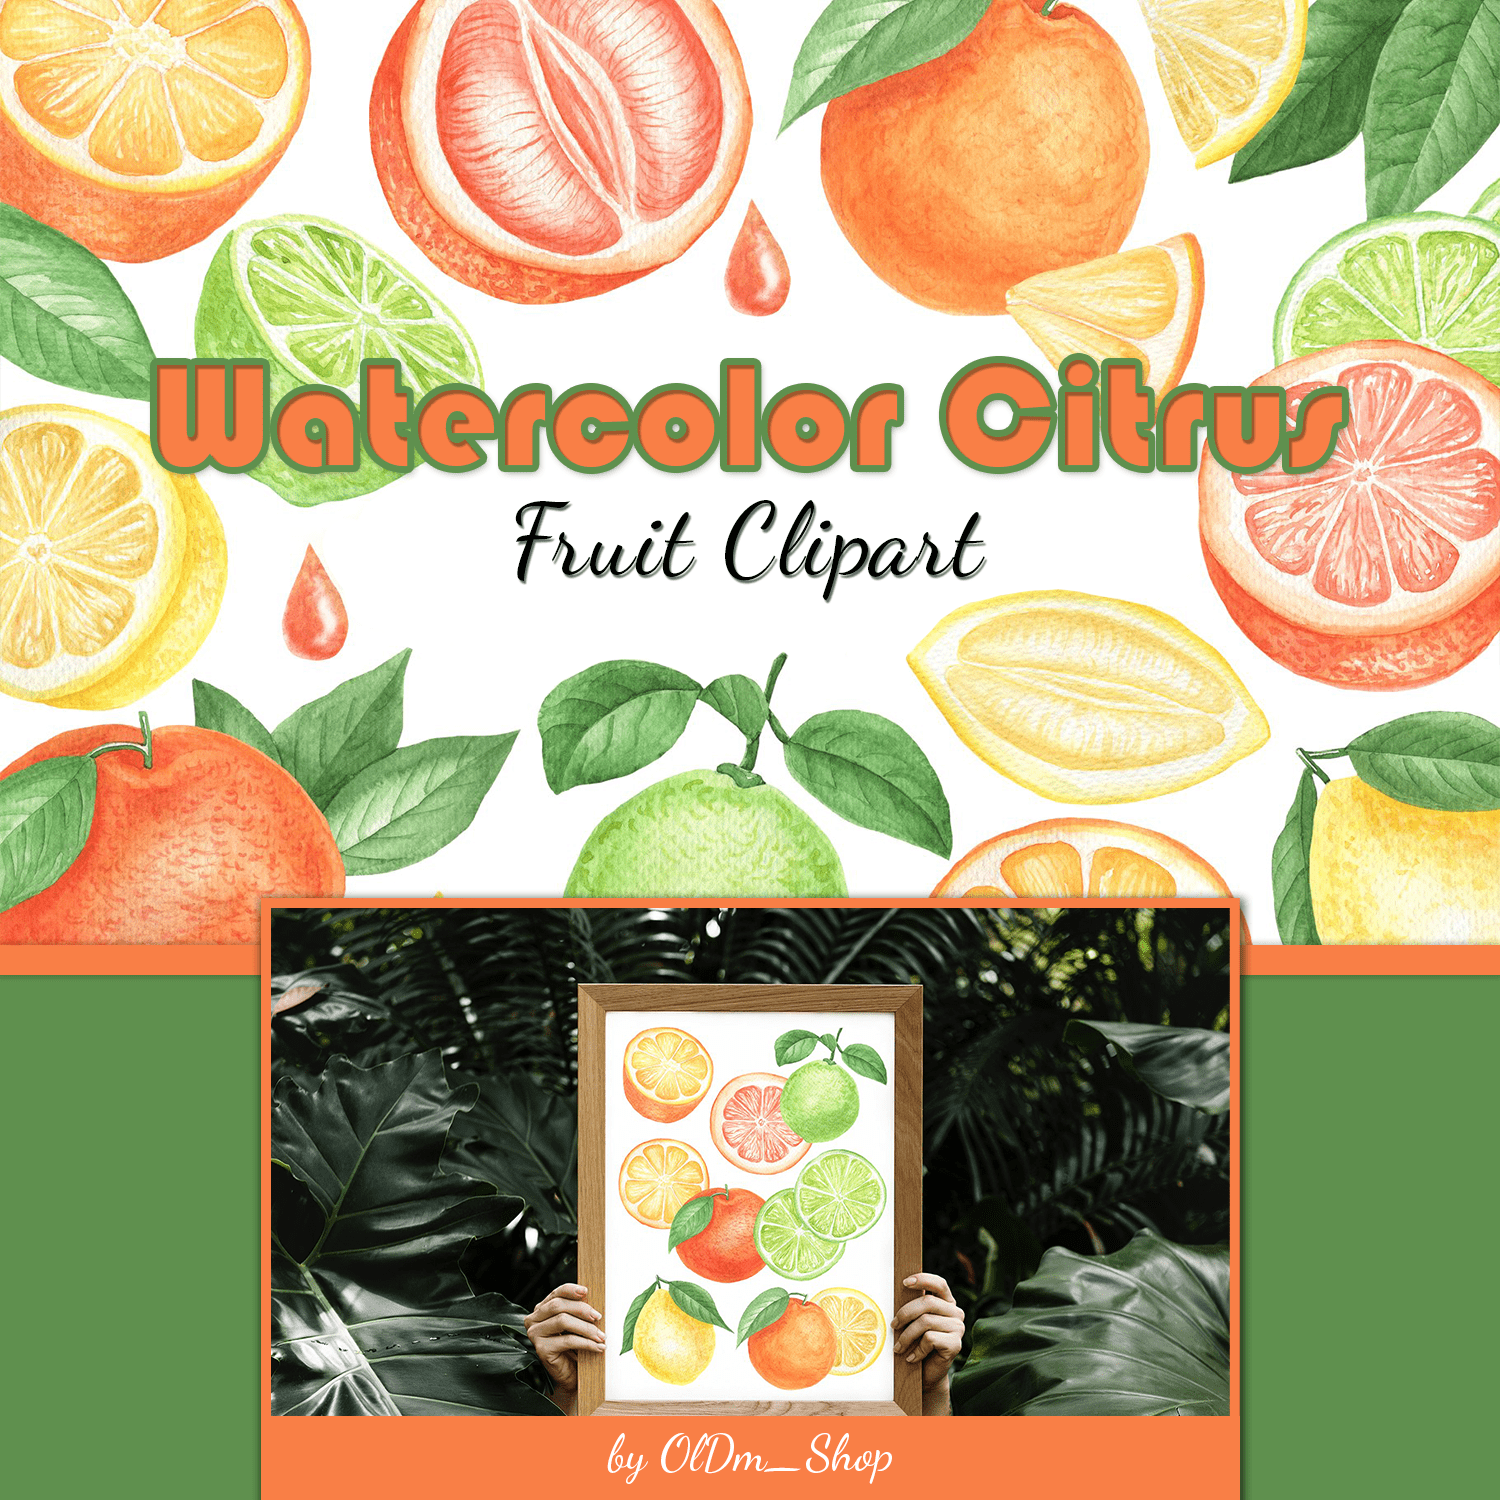 Watercolor Citrus Fruit Clipart cover.